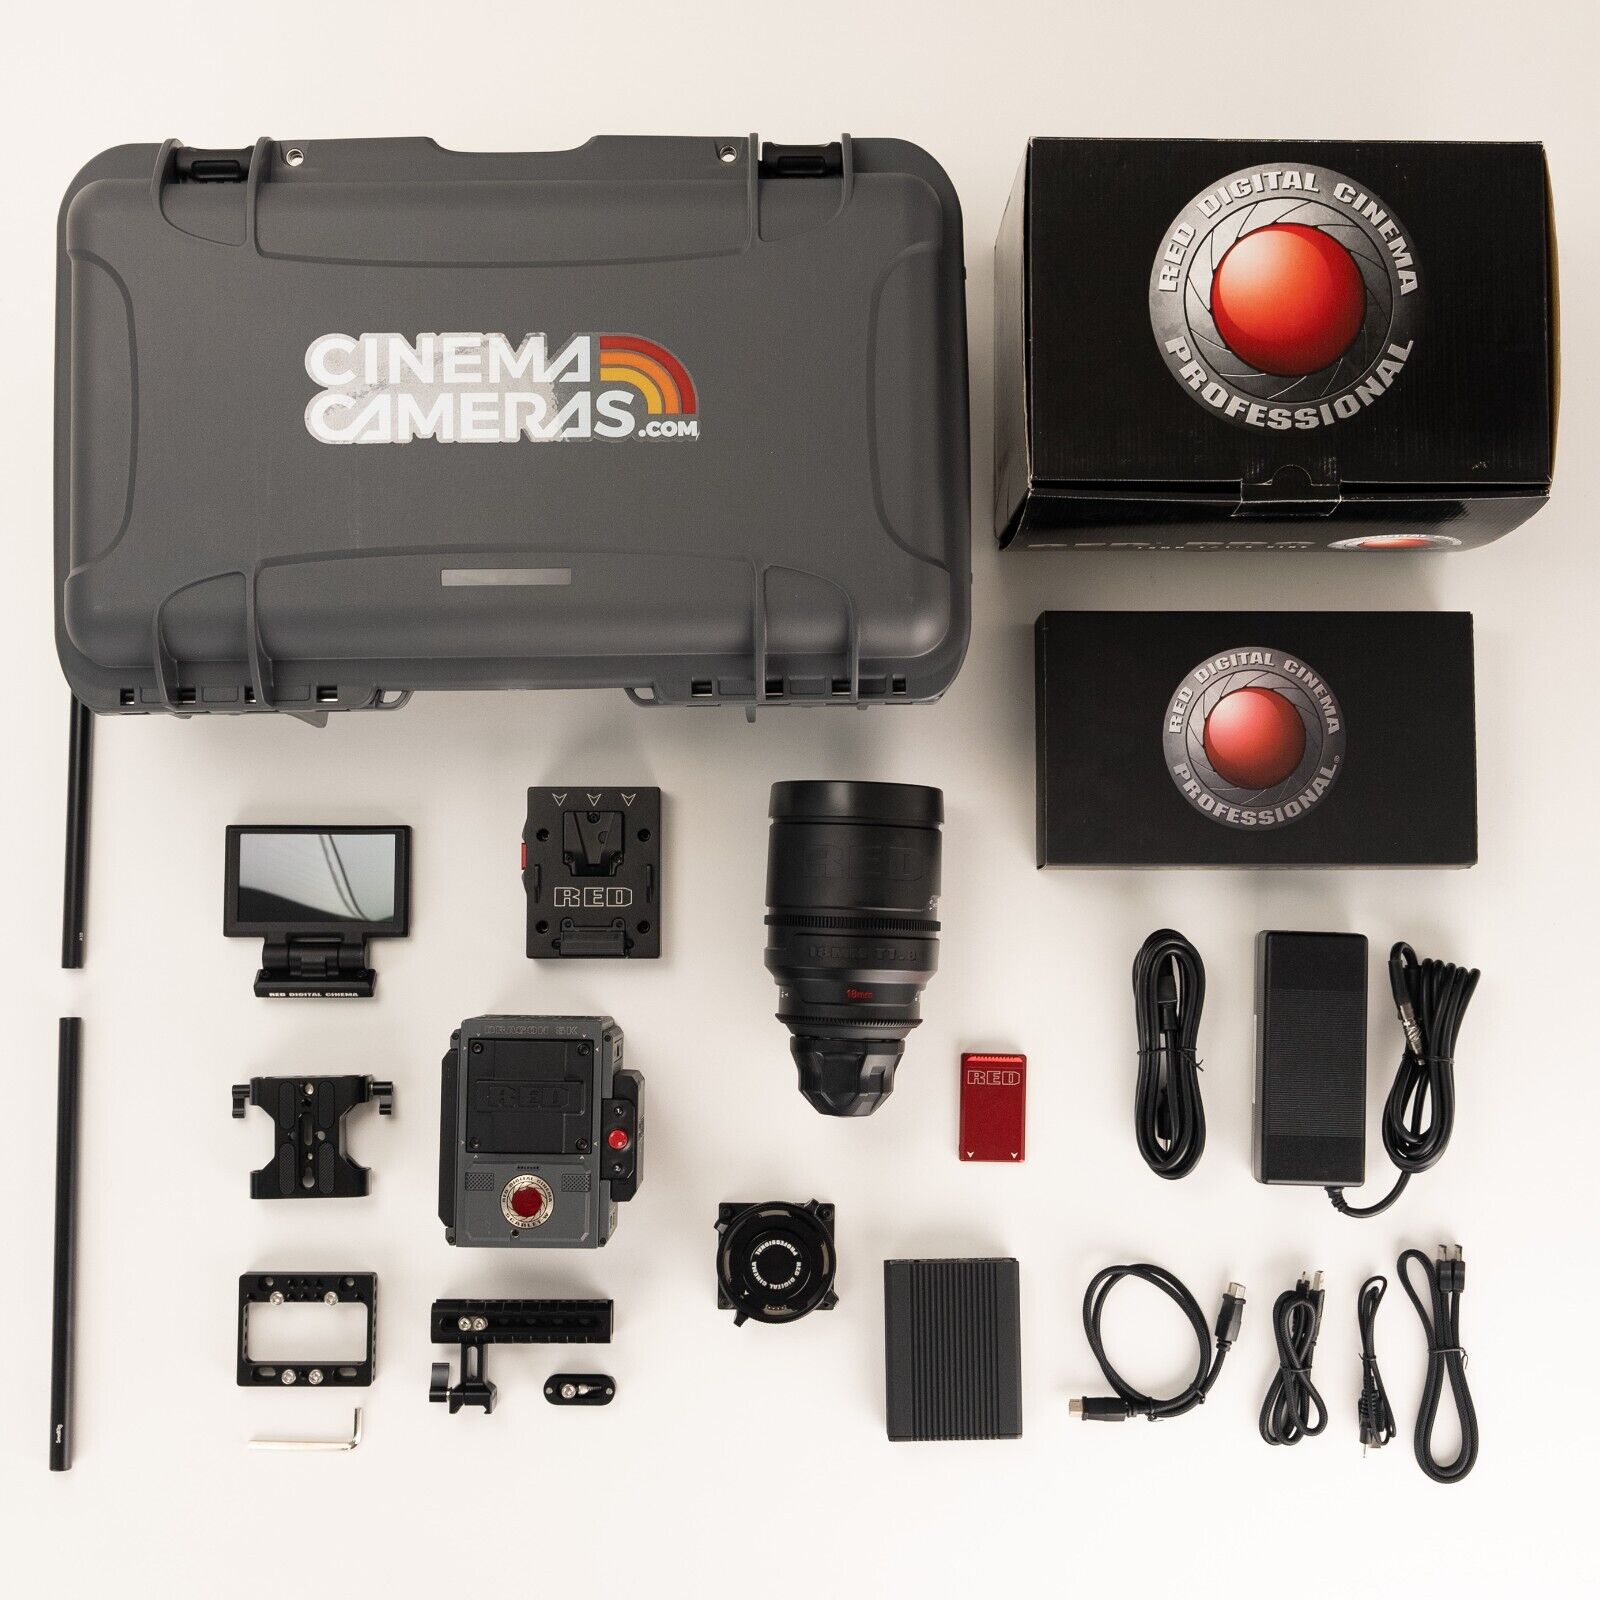 Red Scarlet-w Basic Kit Minimag 4.7" Touch V-lock 18mm Lens Sidekick